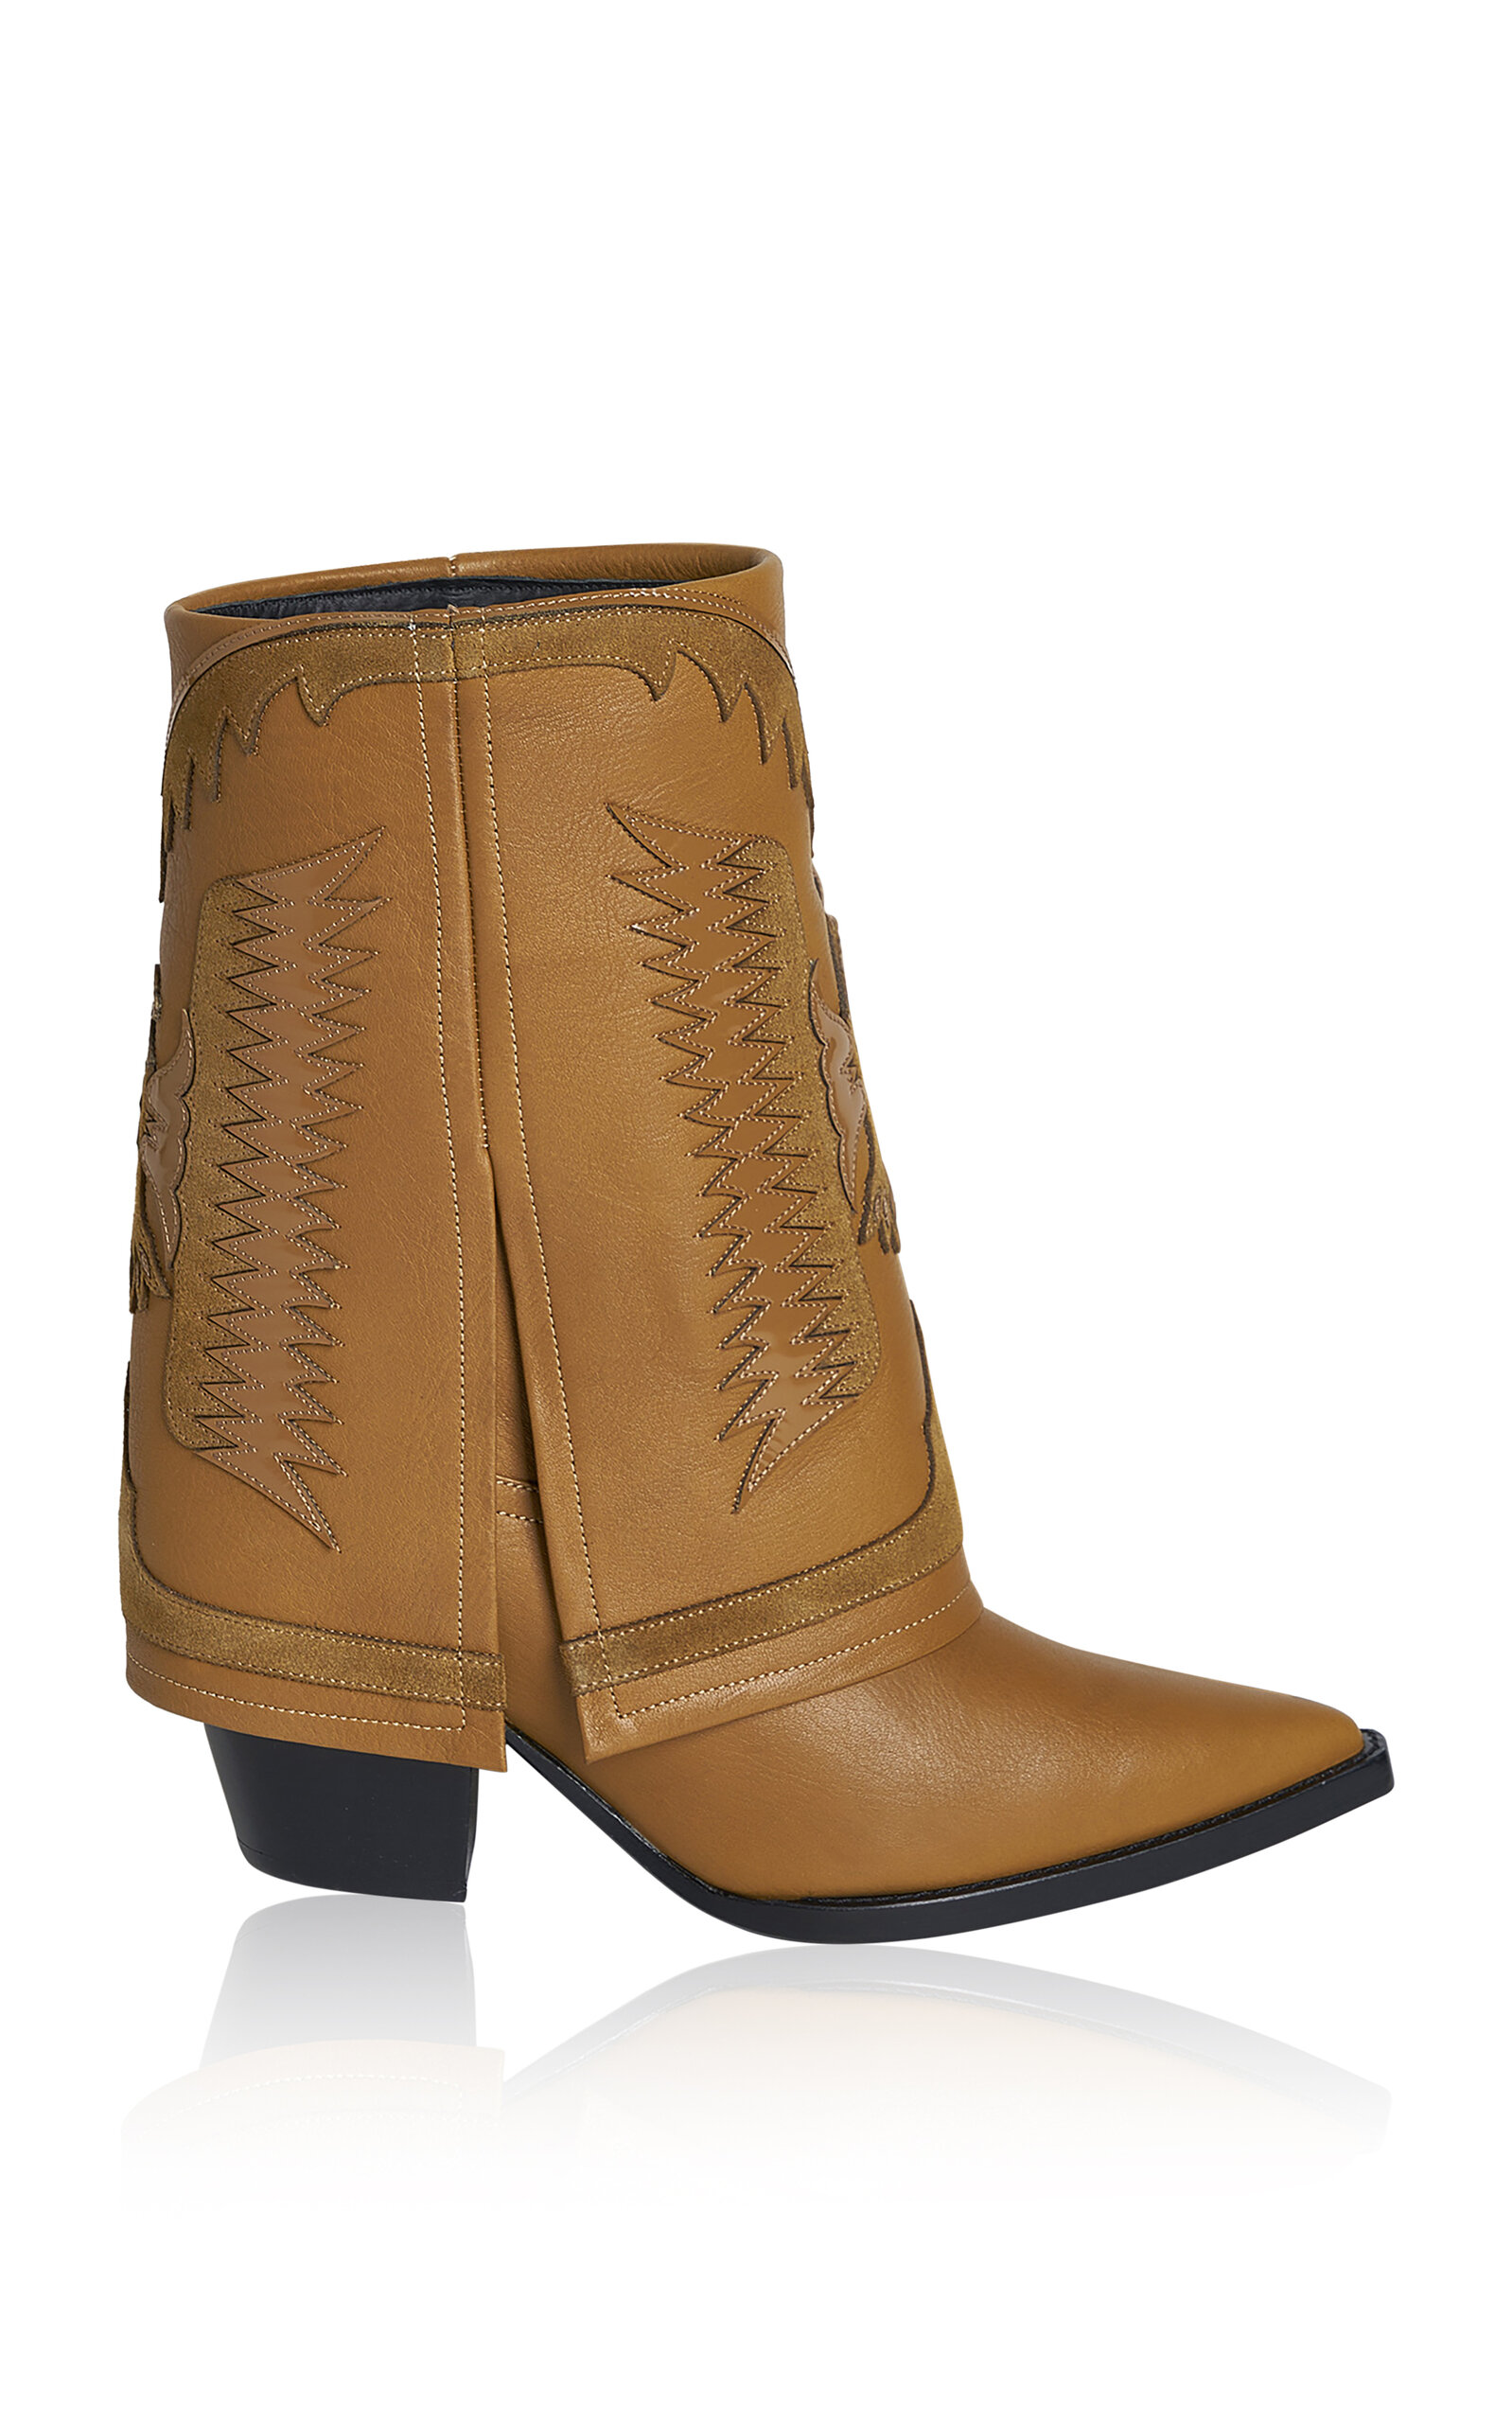 FILLES Ã PAPA Texas Fold Over Leather Low Western Boots